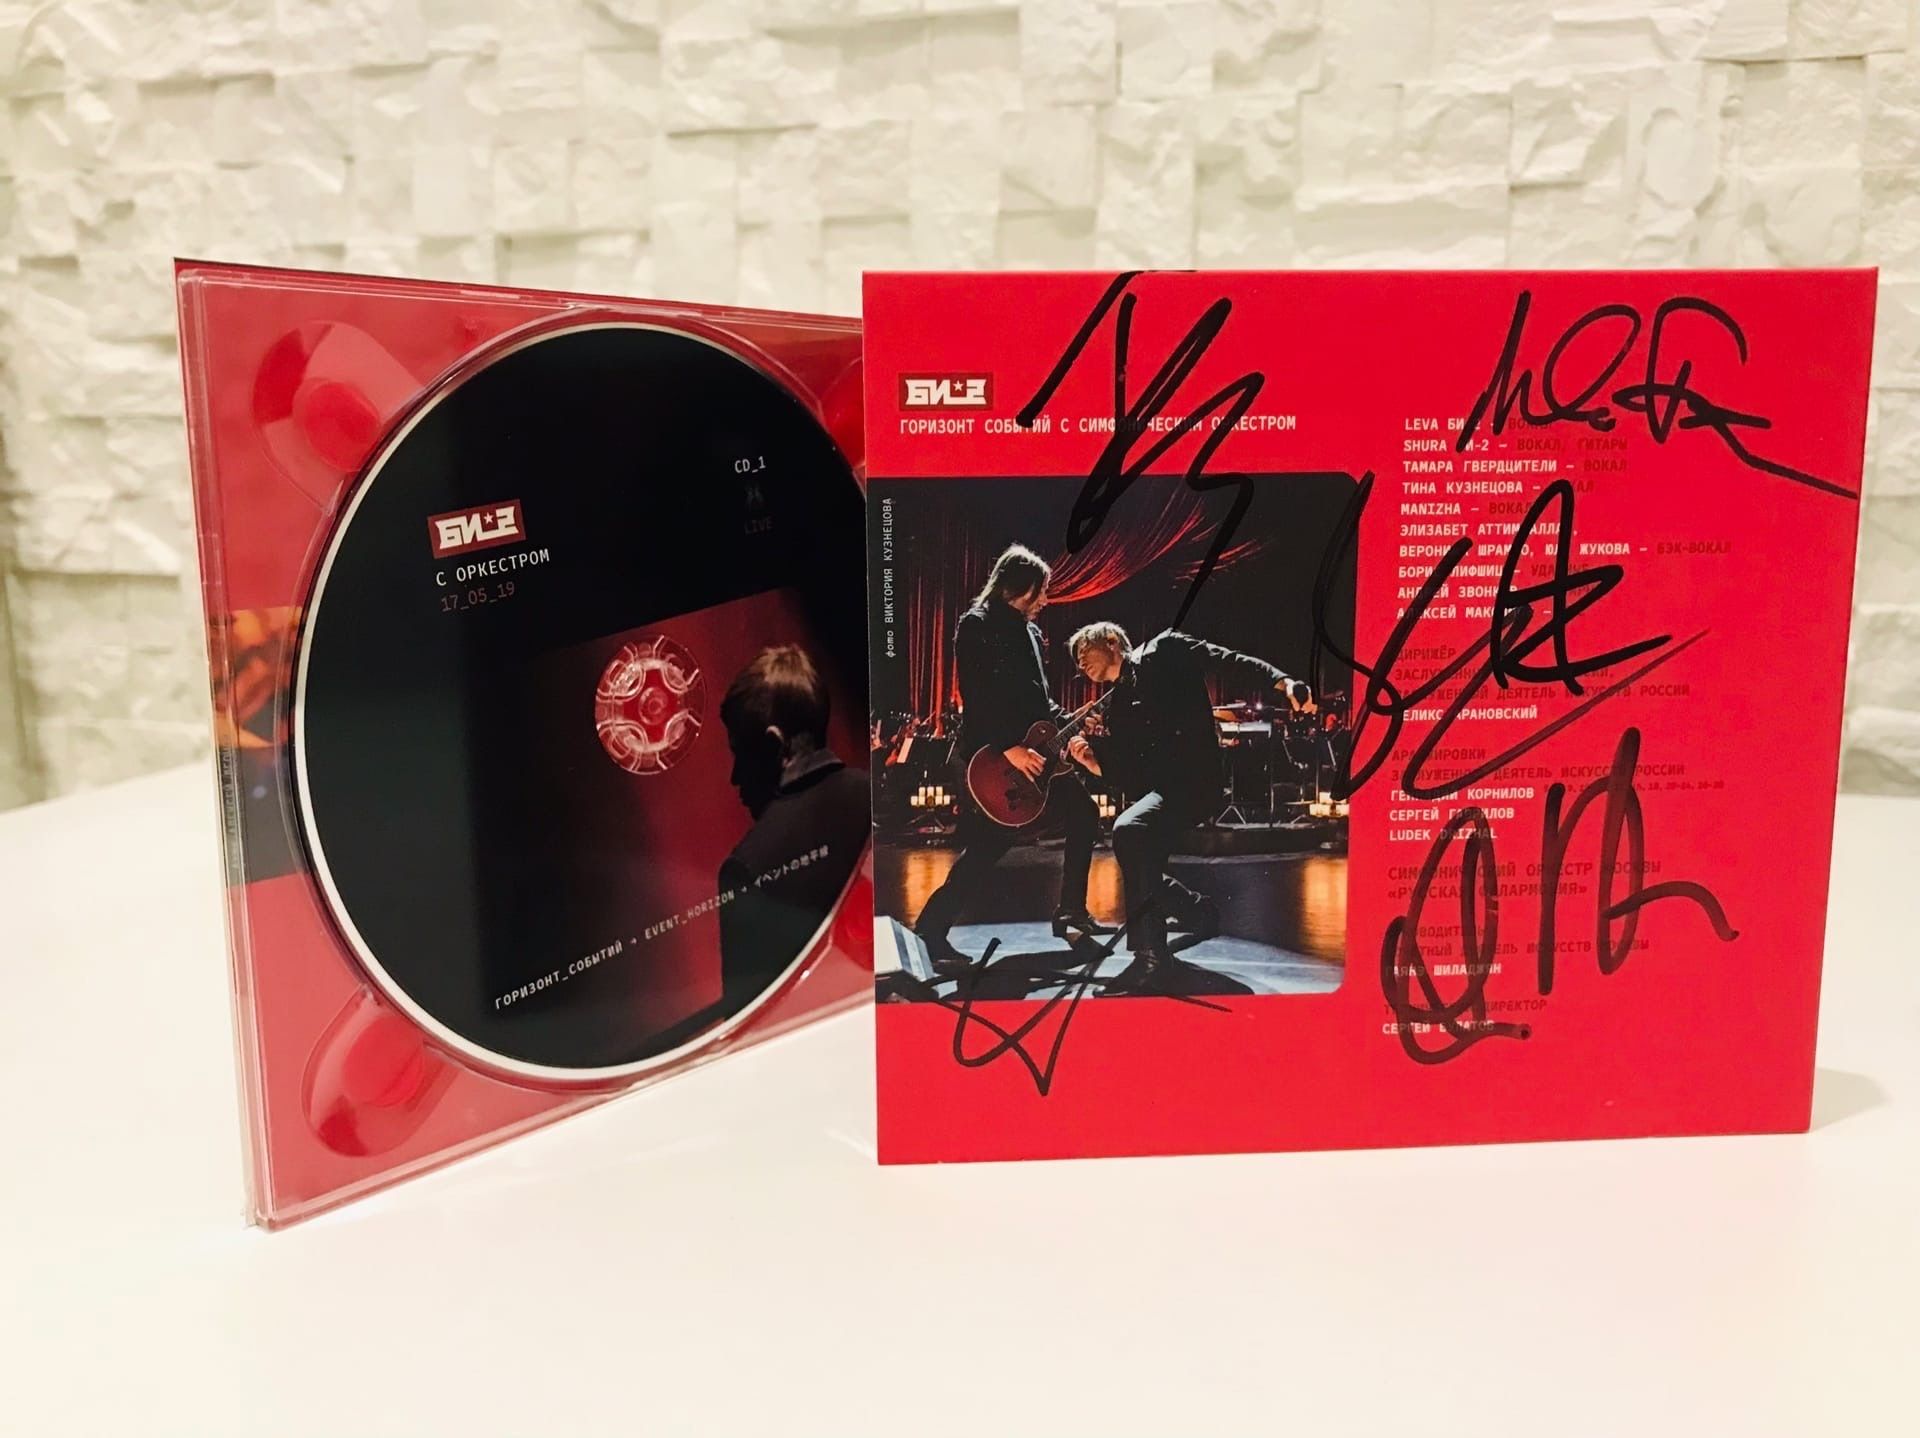 Би-2 — Горизонт событий, с автографами! (2CD и DVD)